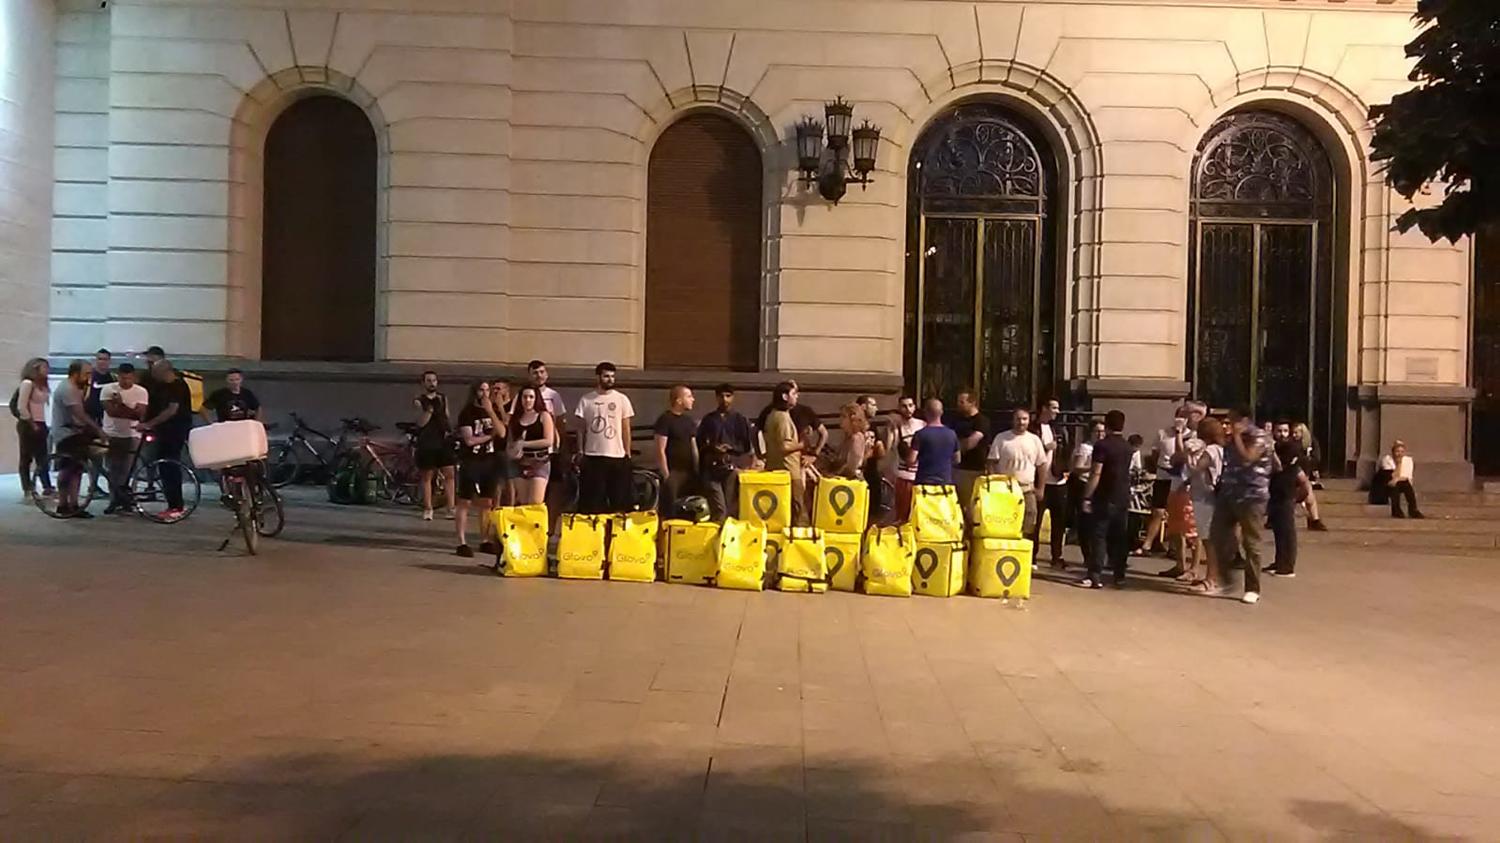 https://www.elsaltodiario.com/uploads/fotos/r1500/c71e32d4/glovo_protesta.jpg?v=63703814704